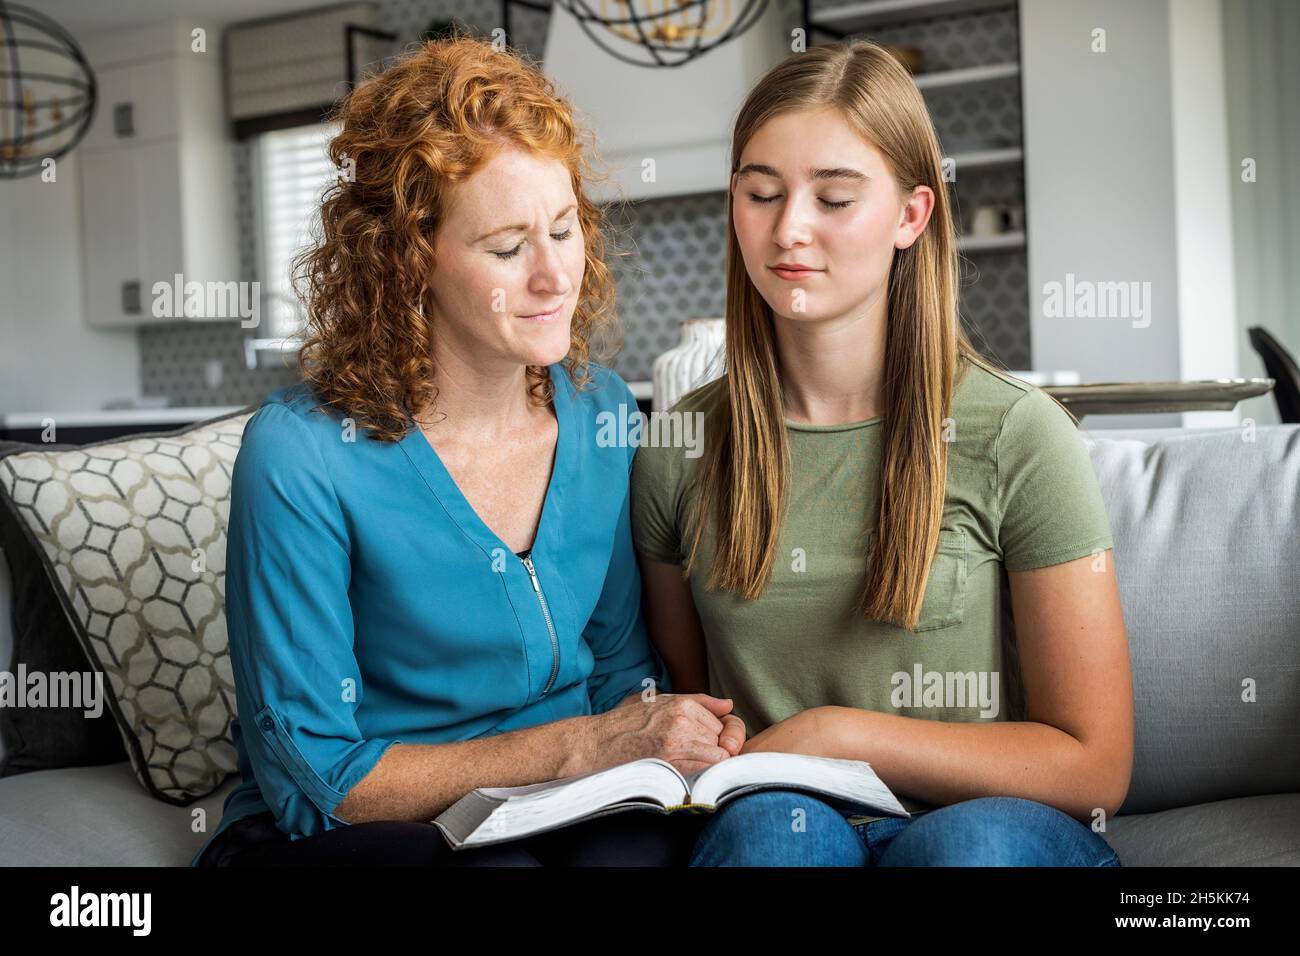 Mutter und Tochter im Teenageralter, die zu Hause auf einer Couch sitzen und die Bibel lesen und gemeinsam beten; Edmonton, Alberta, Kanada Stockfoto